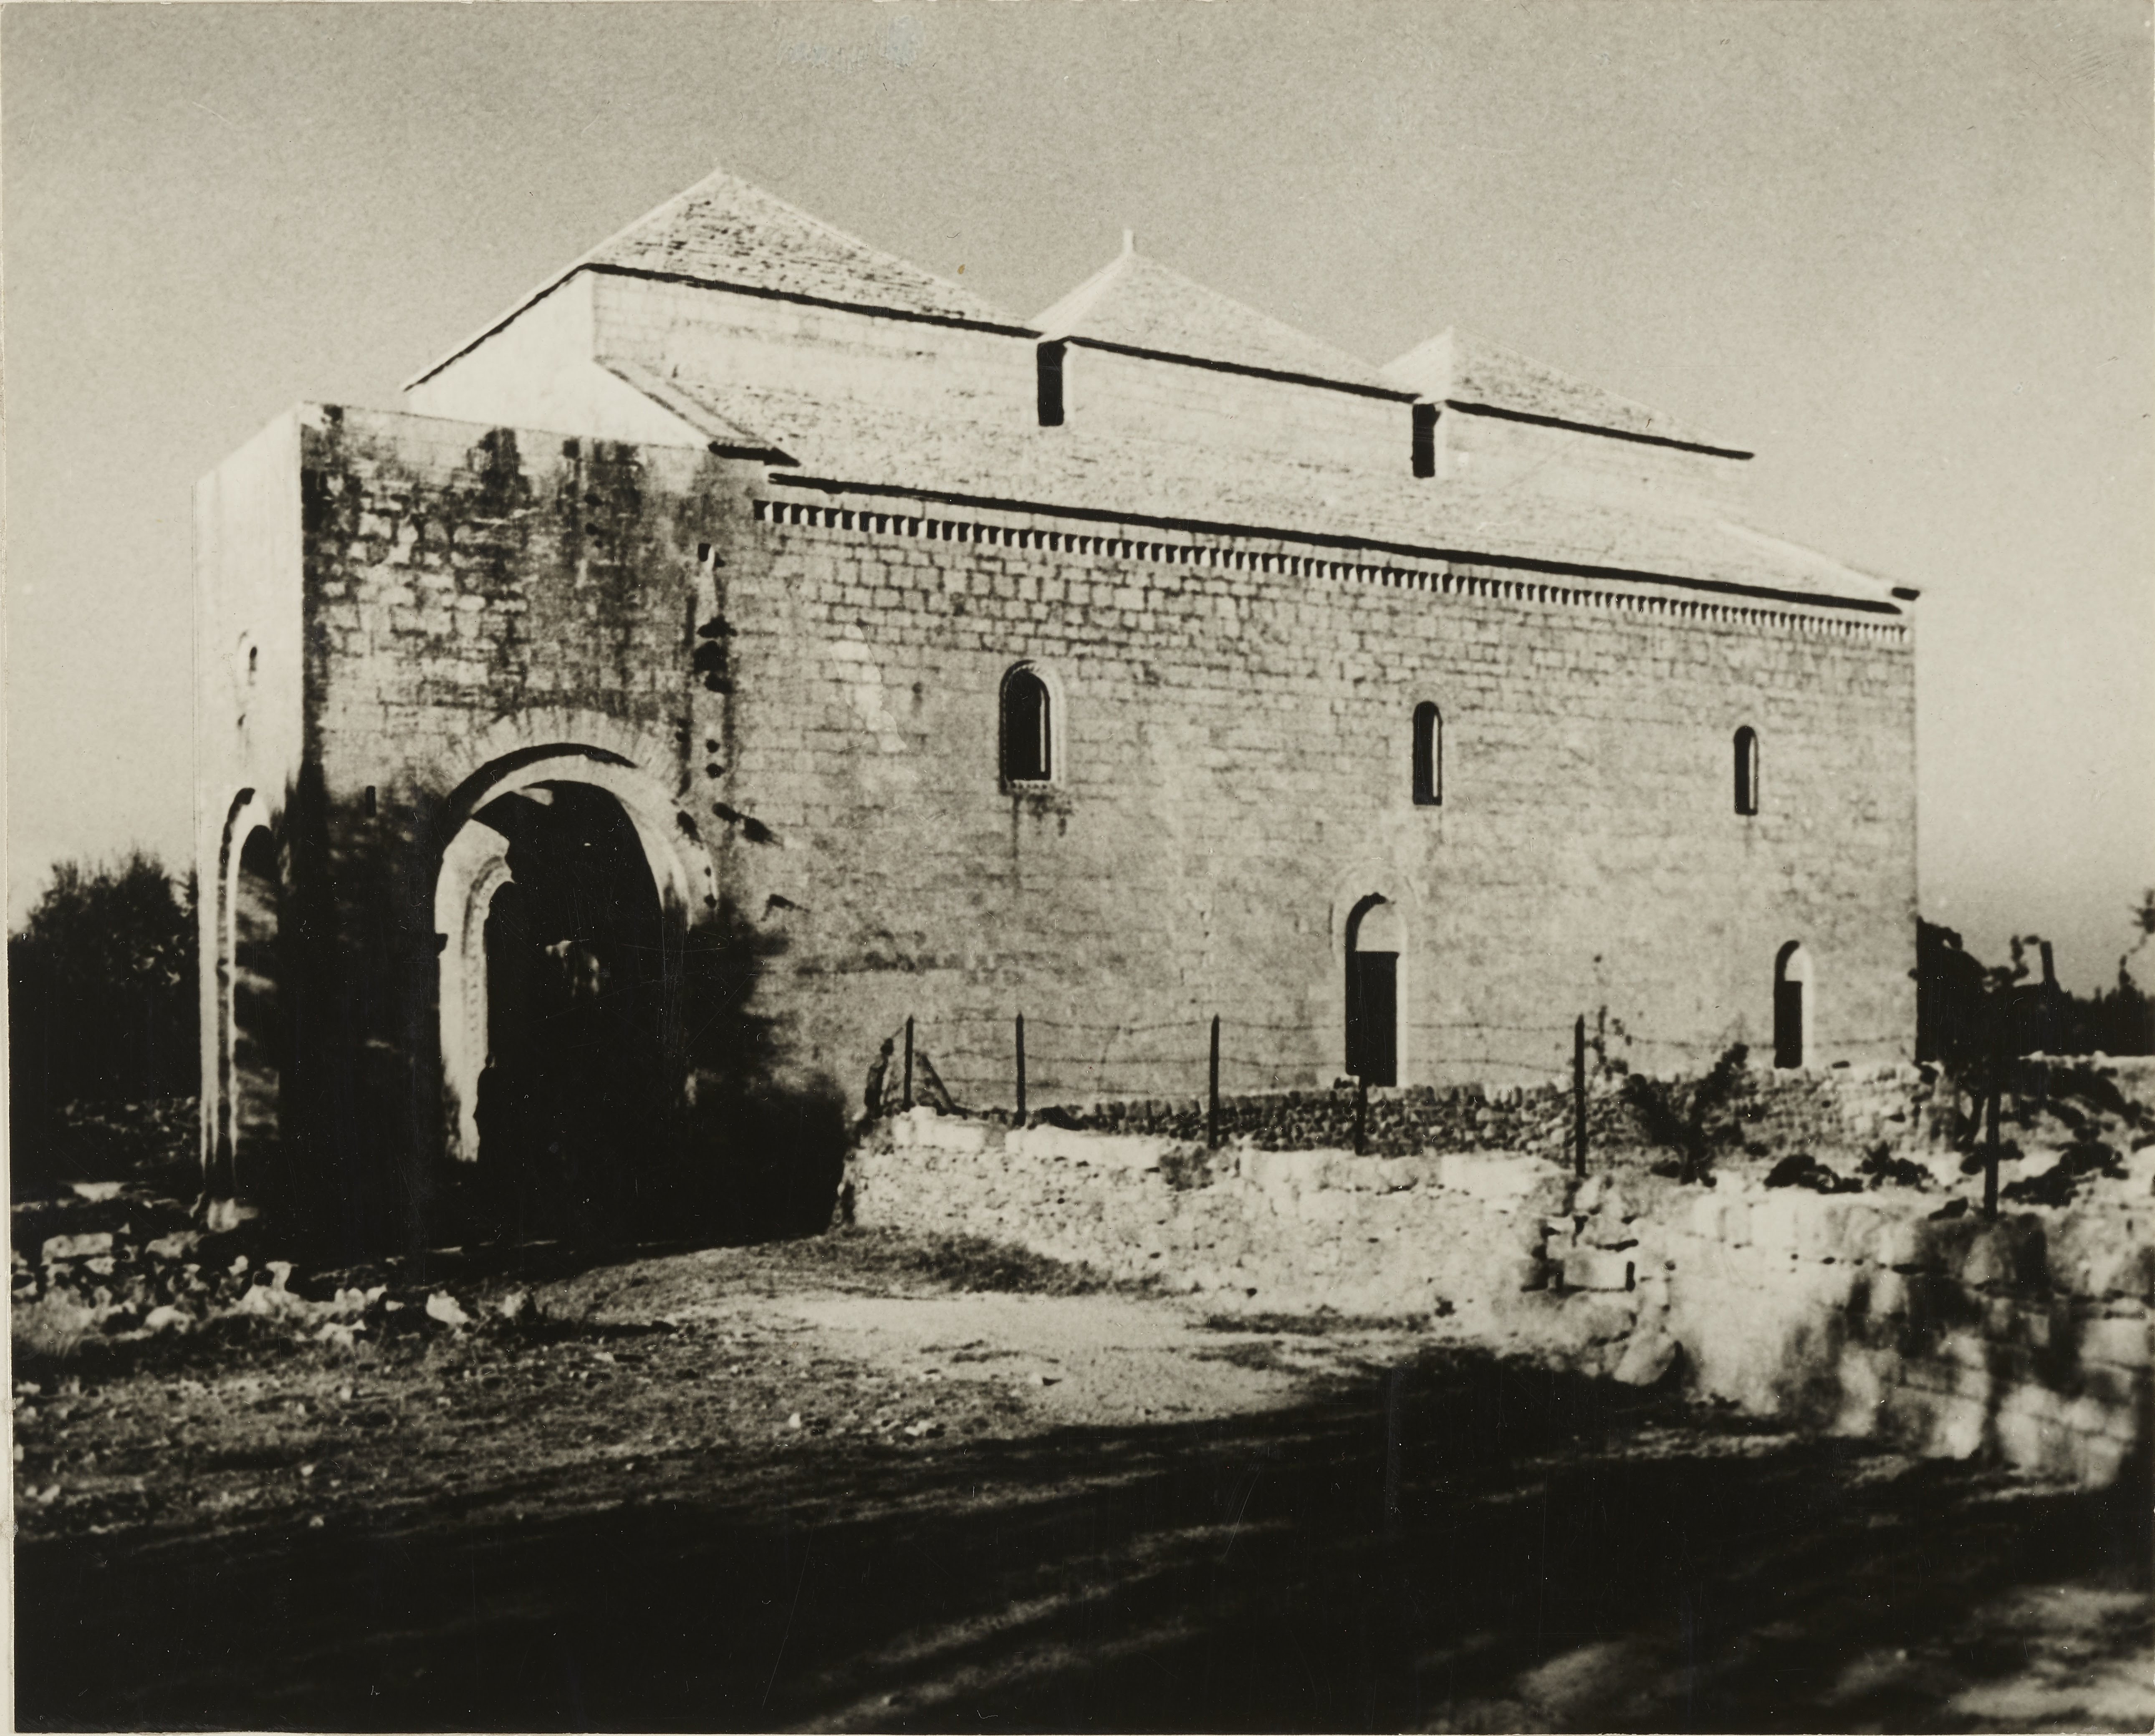 Fotografo non identificato, Valenzano - Chiesa di Ognissanti, fianco sud, 1951-1975, gelatina ai sali d'argento/carta, MPI6074747